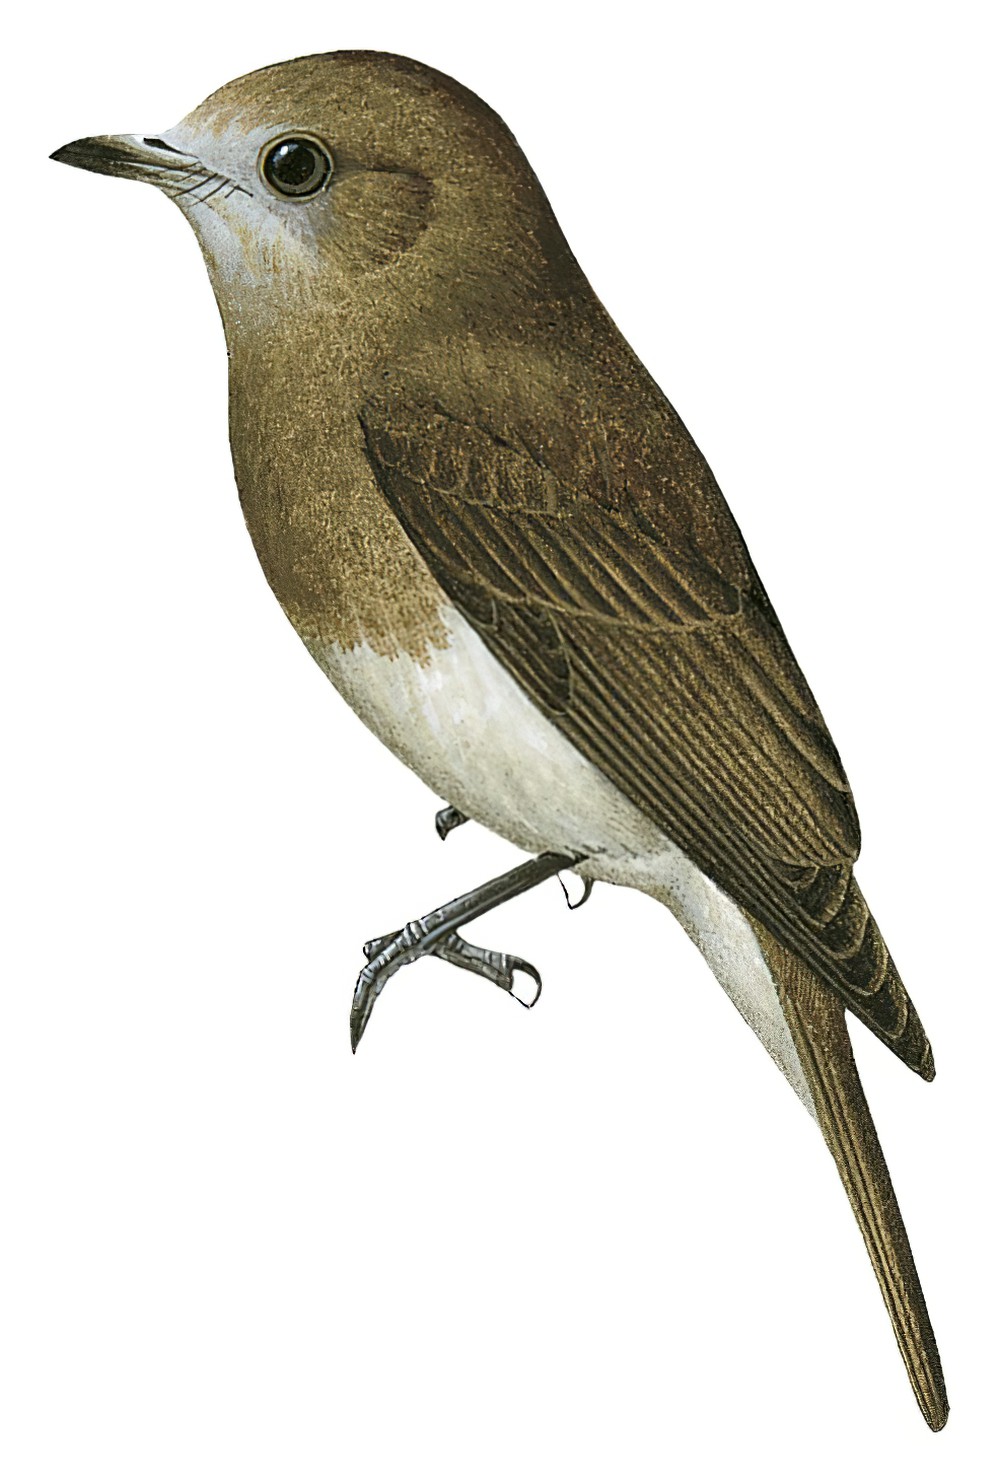 Angola Slaty-Flycatcher / Melaenornis brunneus